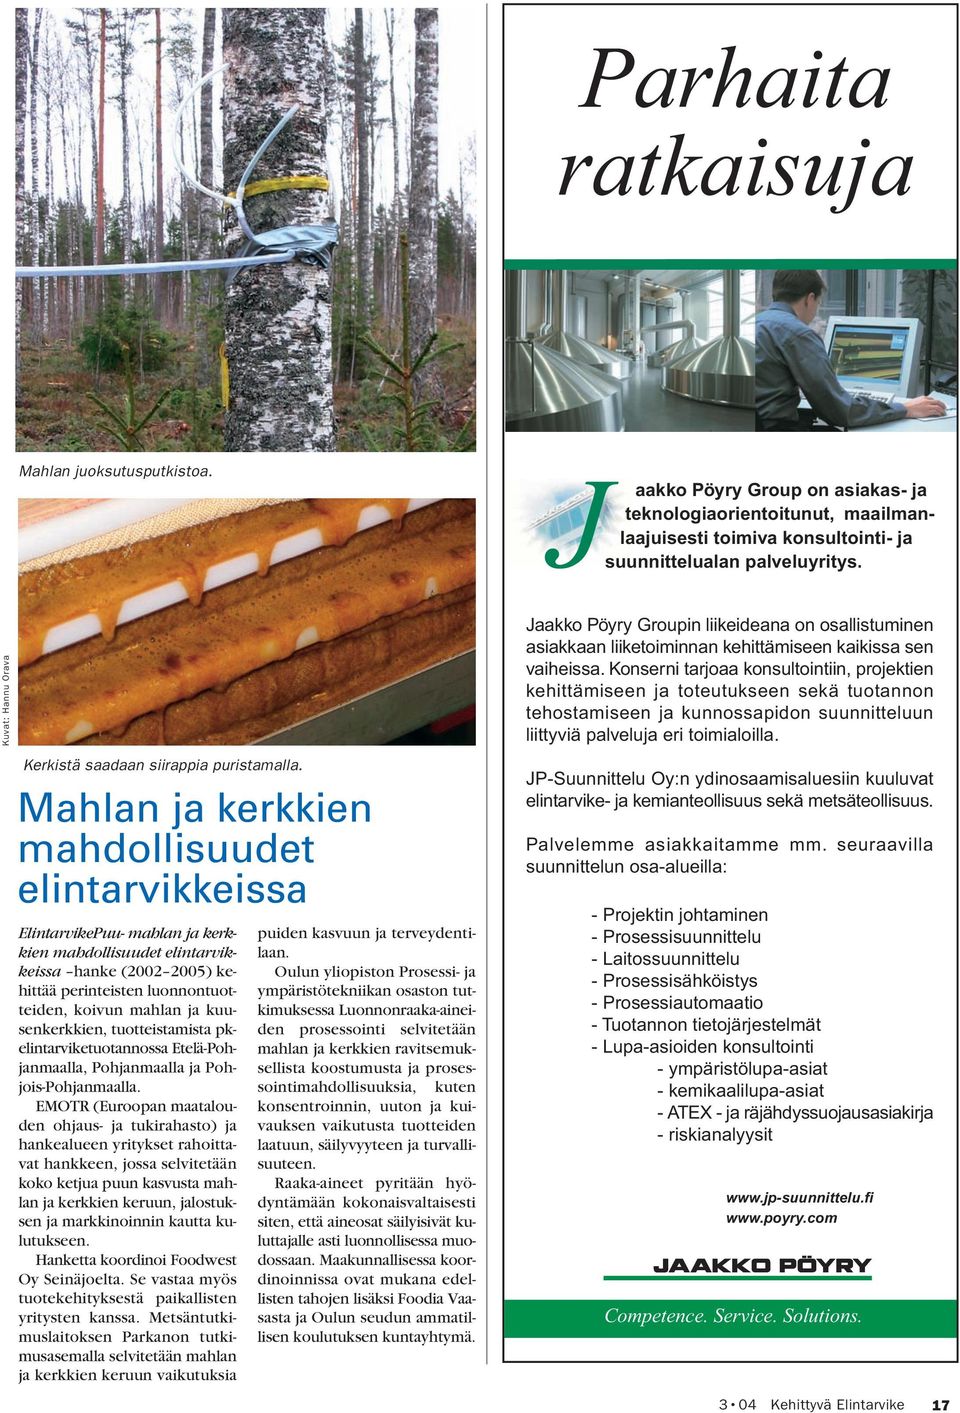 Mahlan ja kerkkien mahdollisuudet elintarvikkeissa ElintarvikePuu- mahlan ja kerkkien mahdollisuudet elintarvikkeissa hanke (2002 2005) kehittää perinteisten luonnontuotteiden, koivun mahlan ja